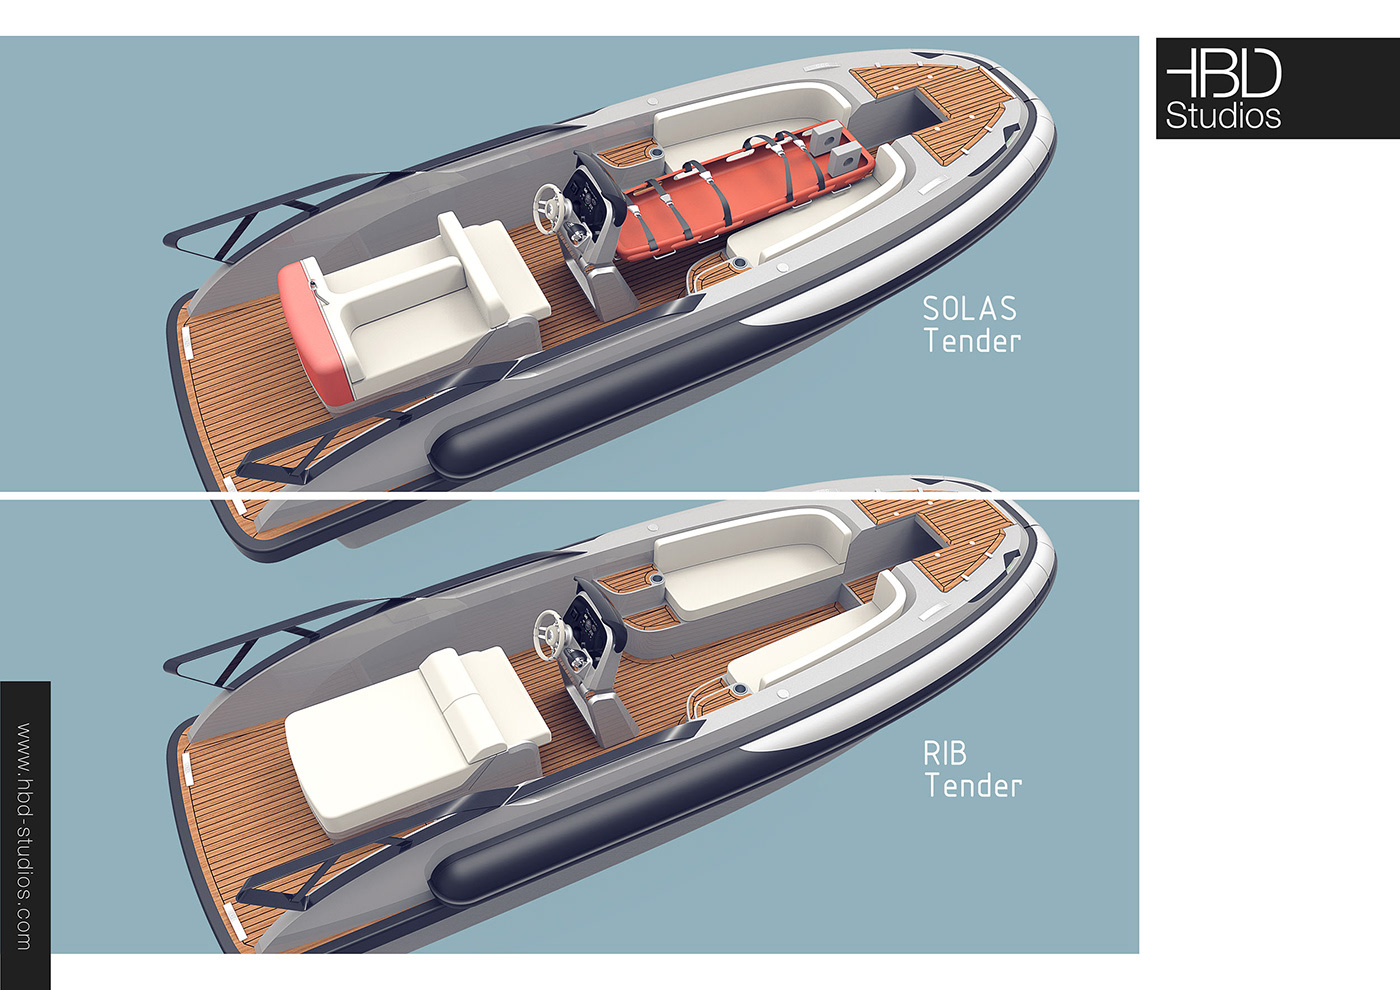 Yacht Design Automotive design industrial design  product design  Alias keyshot car design 3d modeling rendering concept design